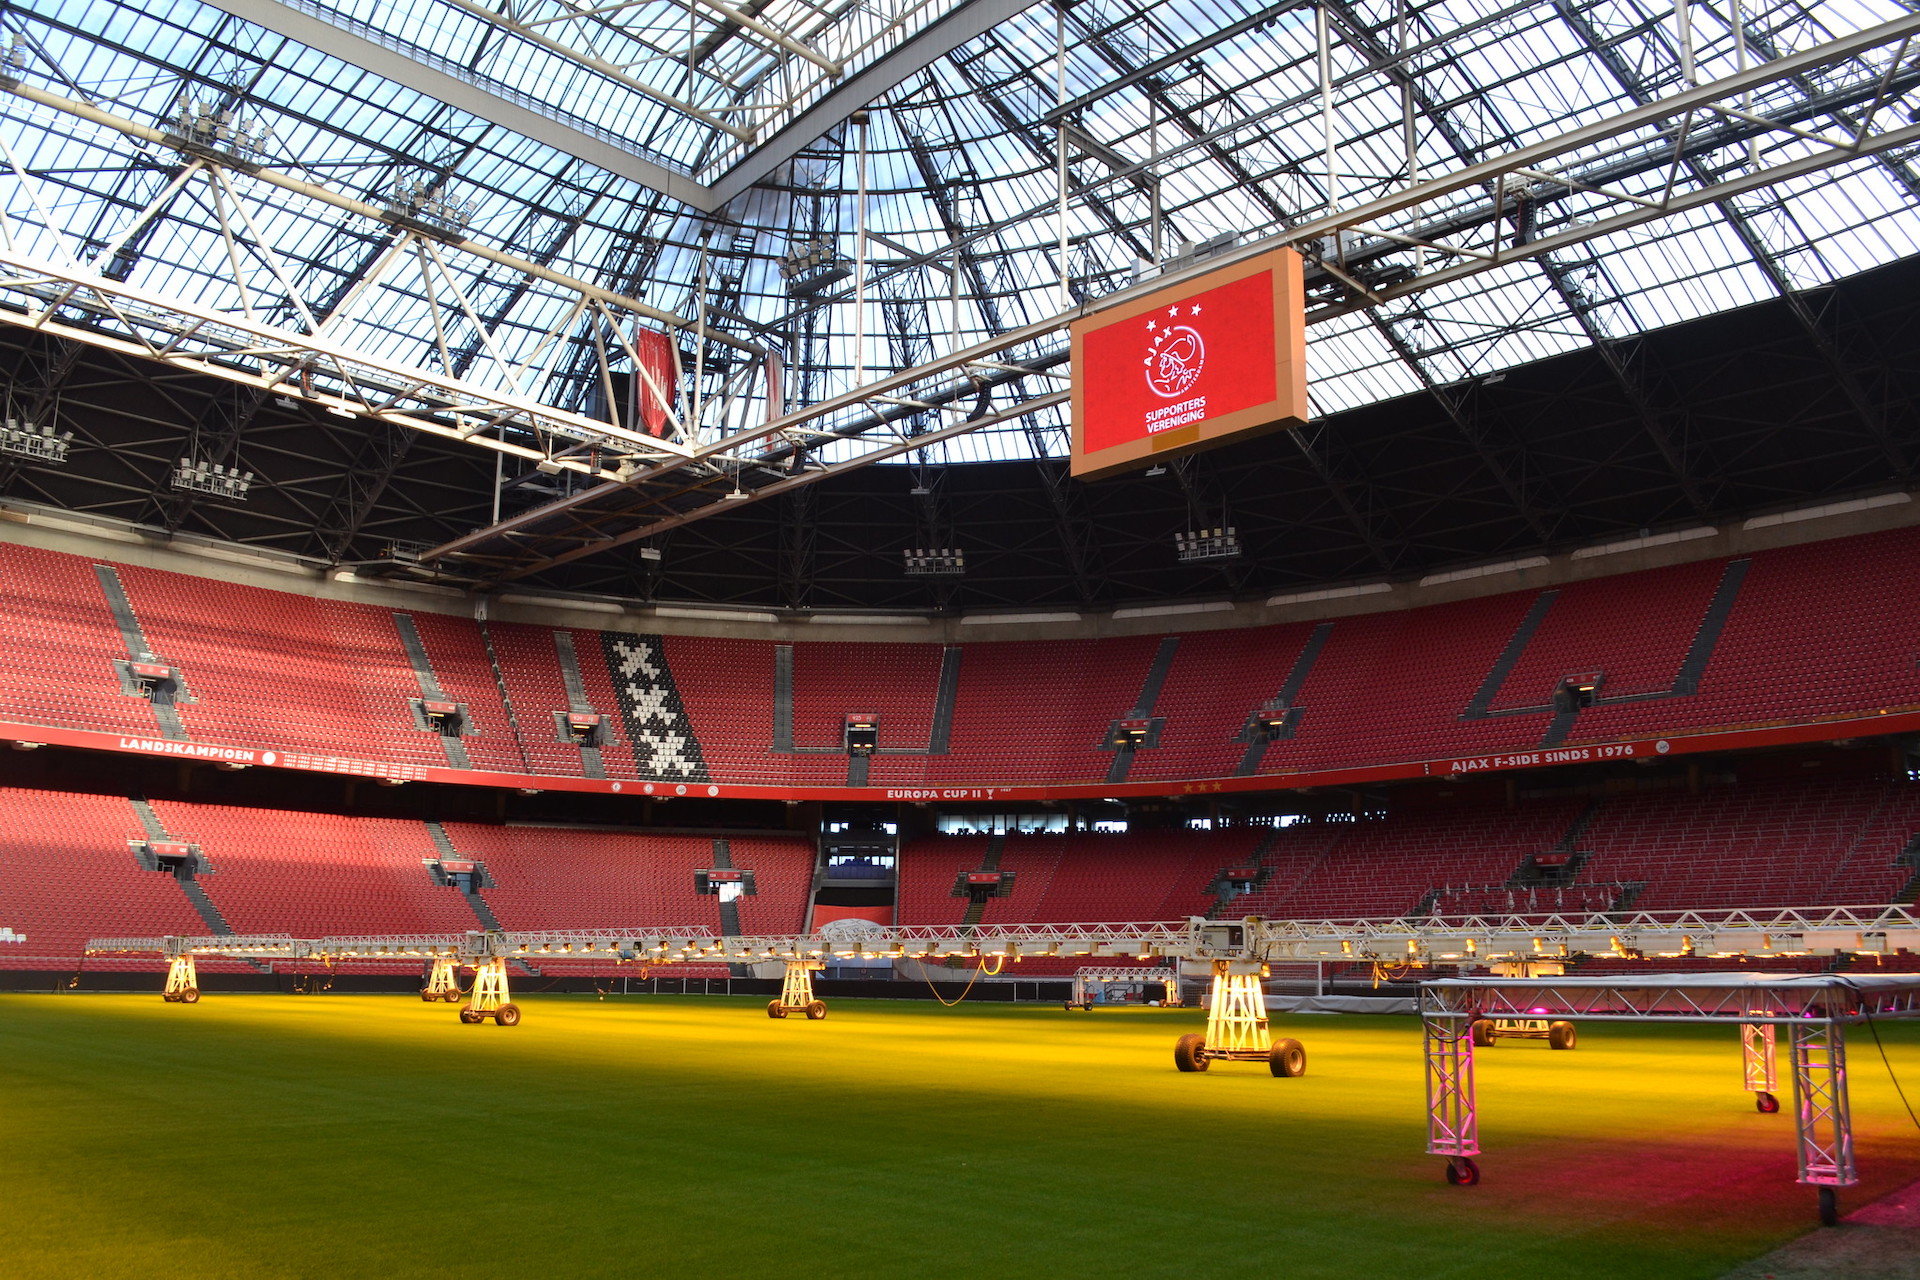 Le stade du club PSV de Philips Stadion, situé dans la ville